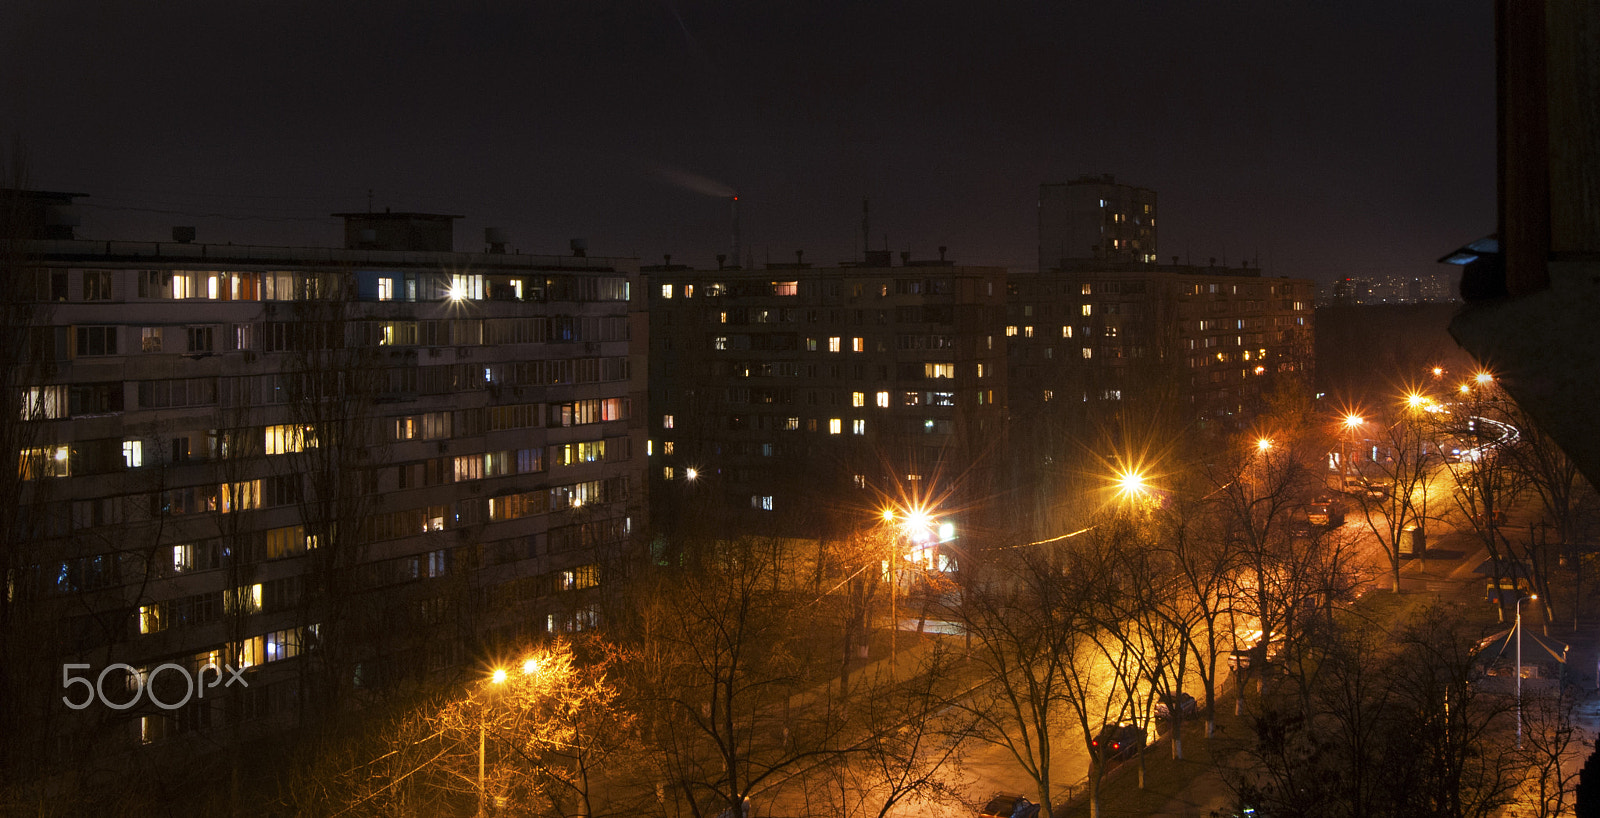 Sony Alpha DSLR-A230 sample photo. ночные улицы спальных районов Киева photography